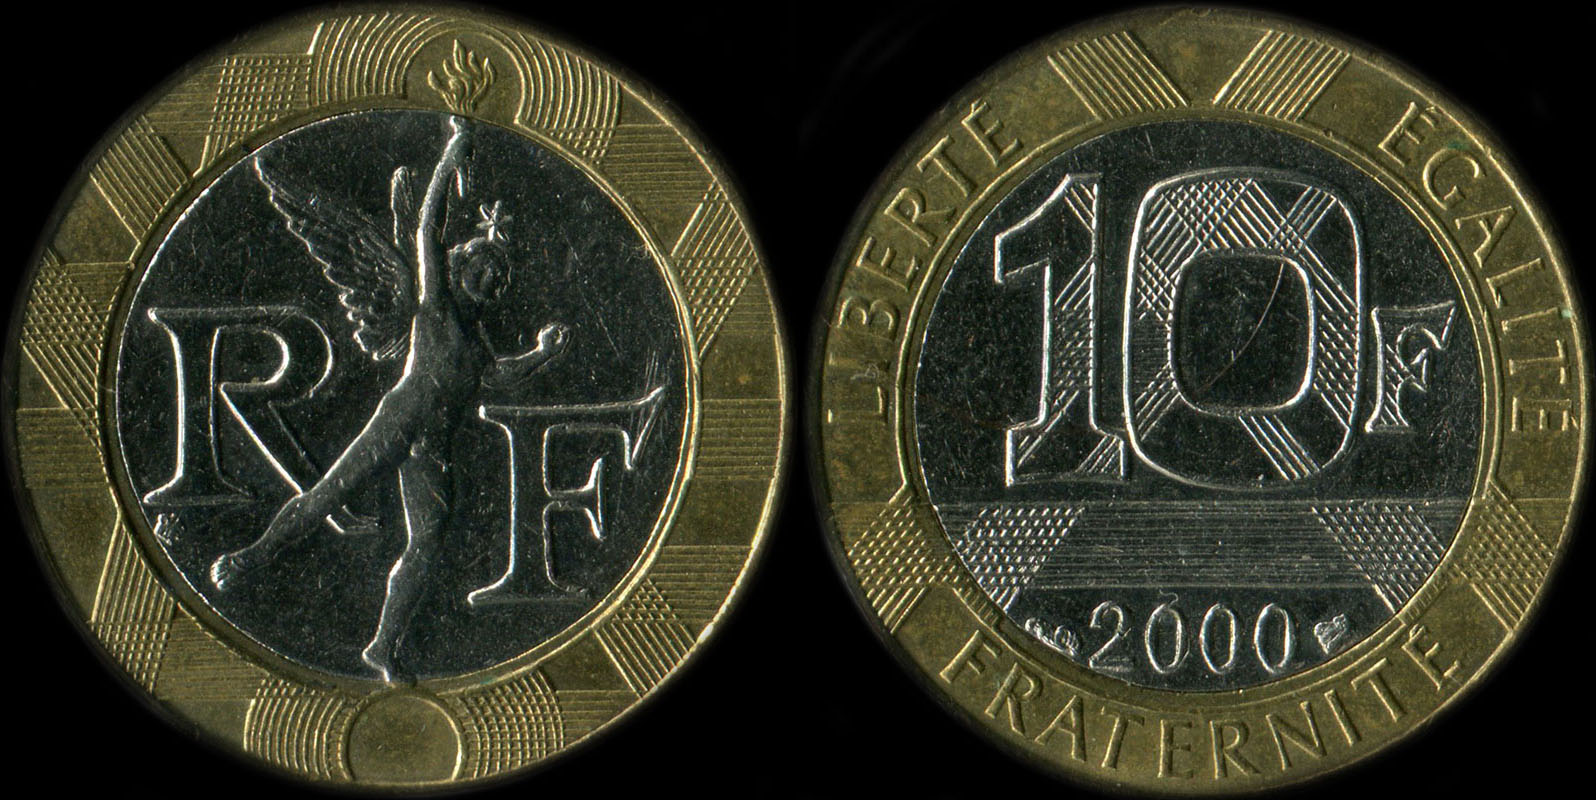 Pièce de 10 francs Génie 2000 différent de Pessac touche le cercle